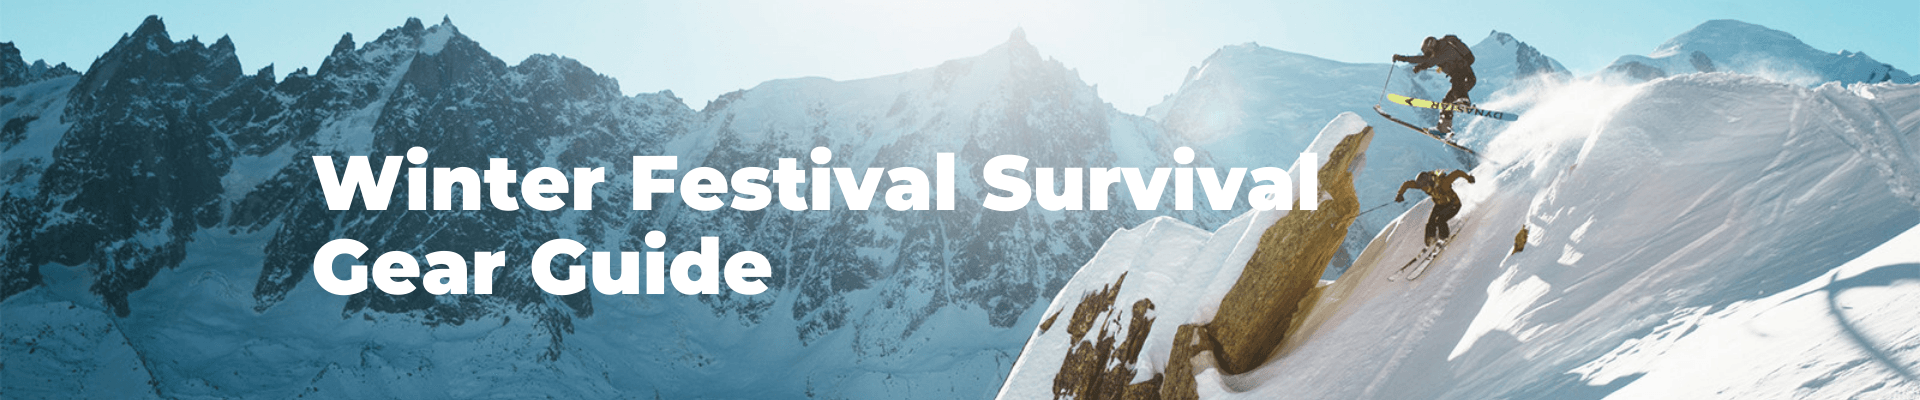 Winter Festival Survival Gear Guide – Outside Sports